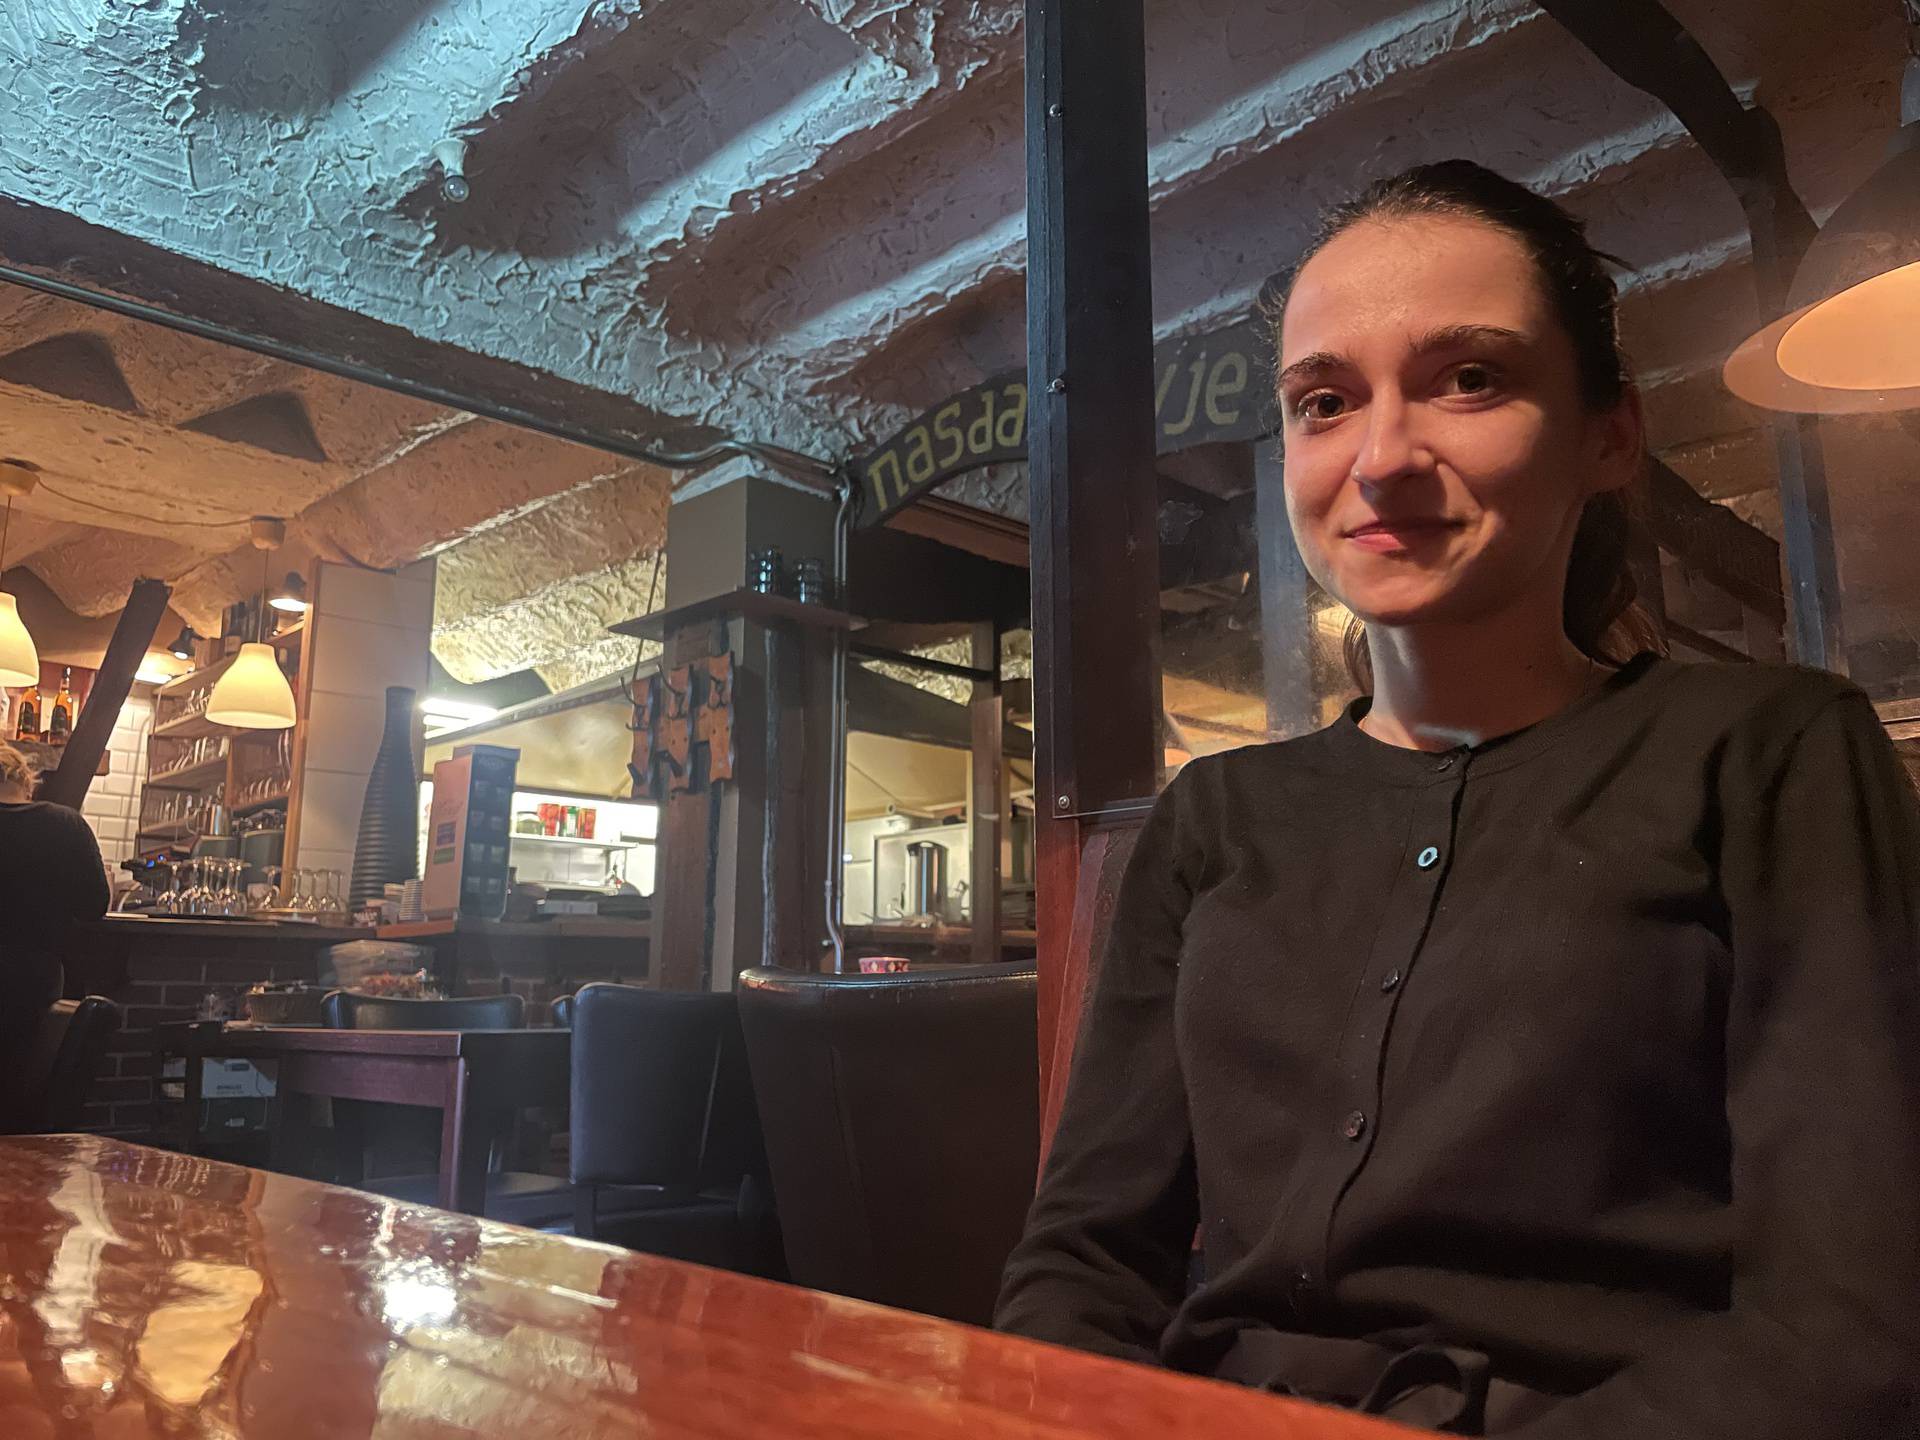 Marija radi u balkanskom restoranu u srcu Haga: 'Ostat ću ovdje. Sisak je depresija, sivilo'